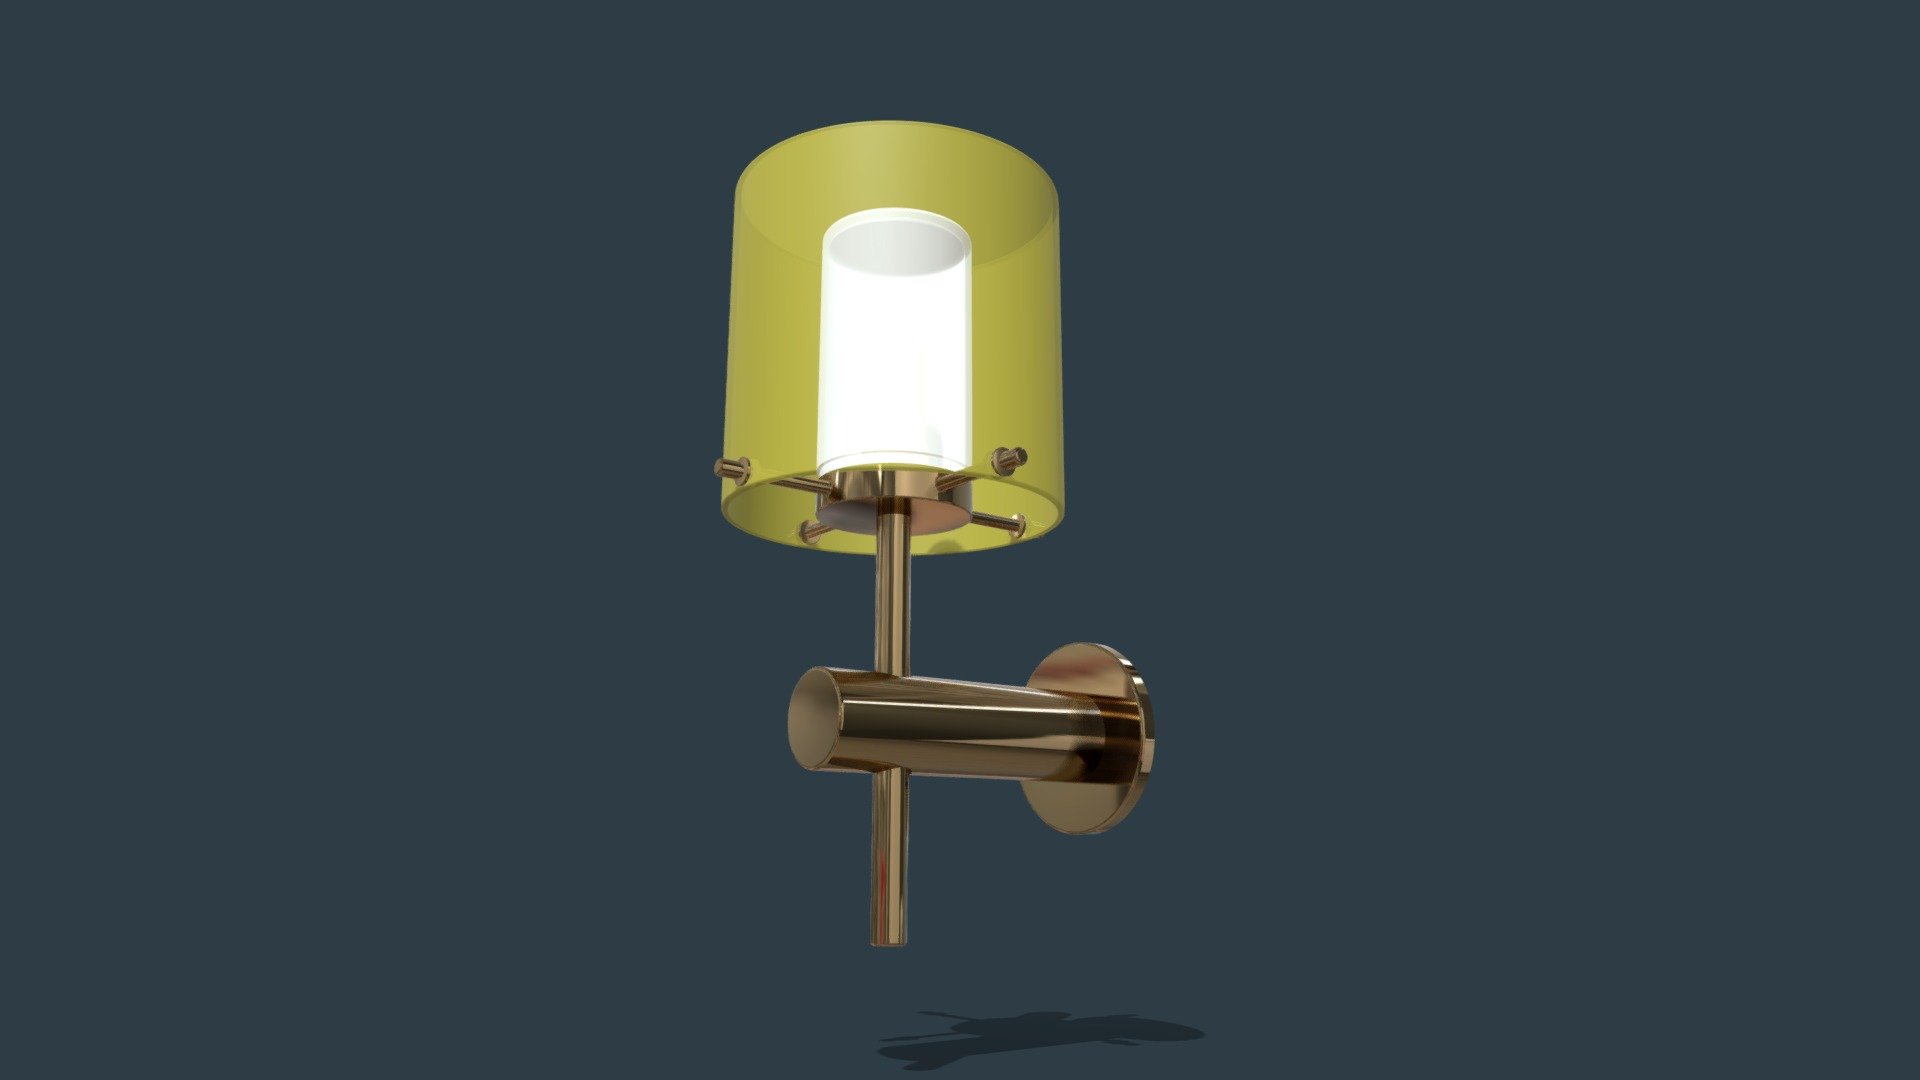 RHINO 6: WALL LAMP